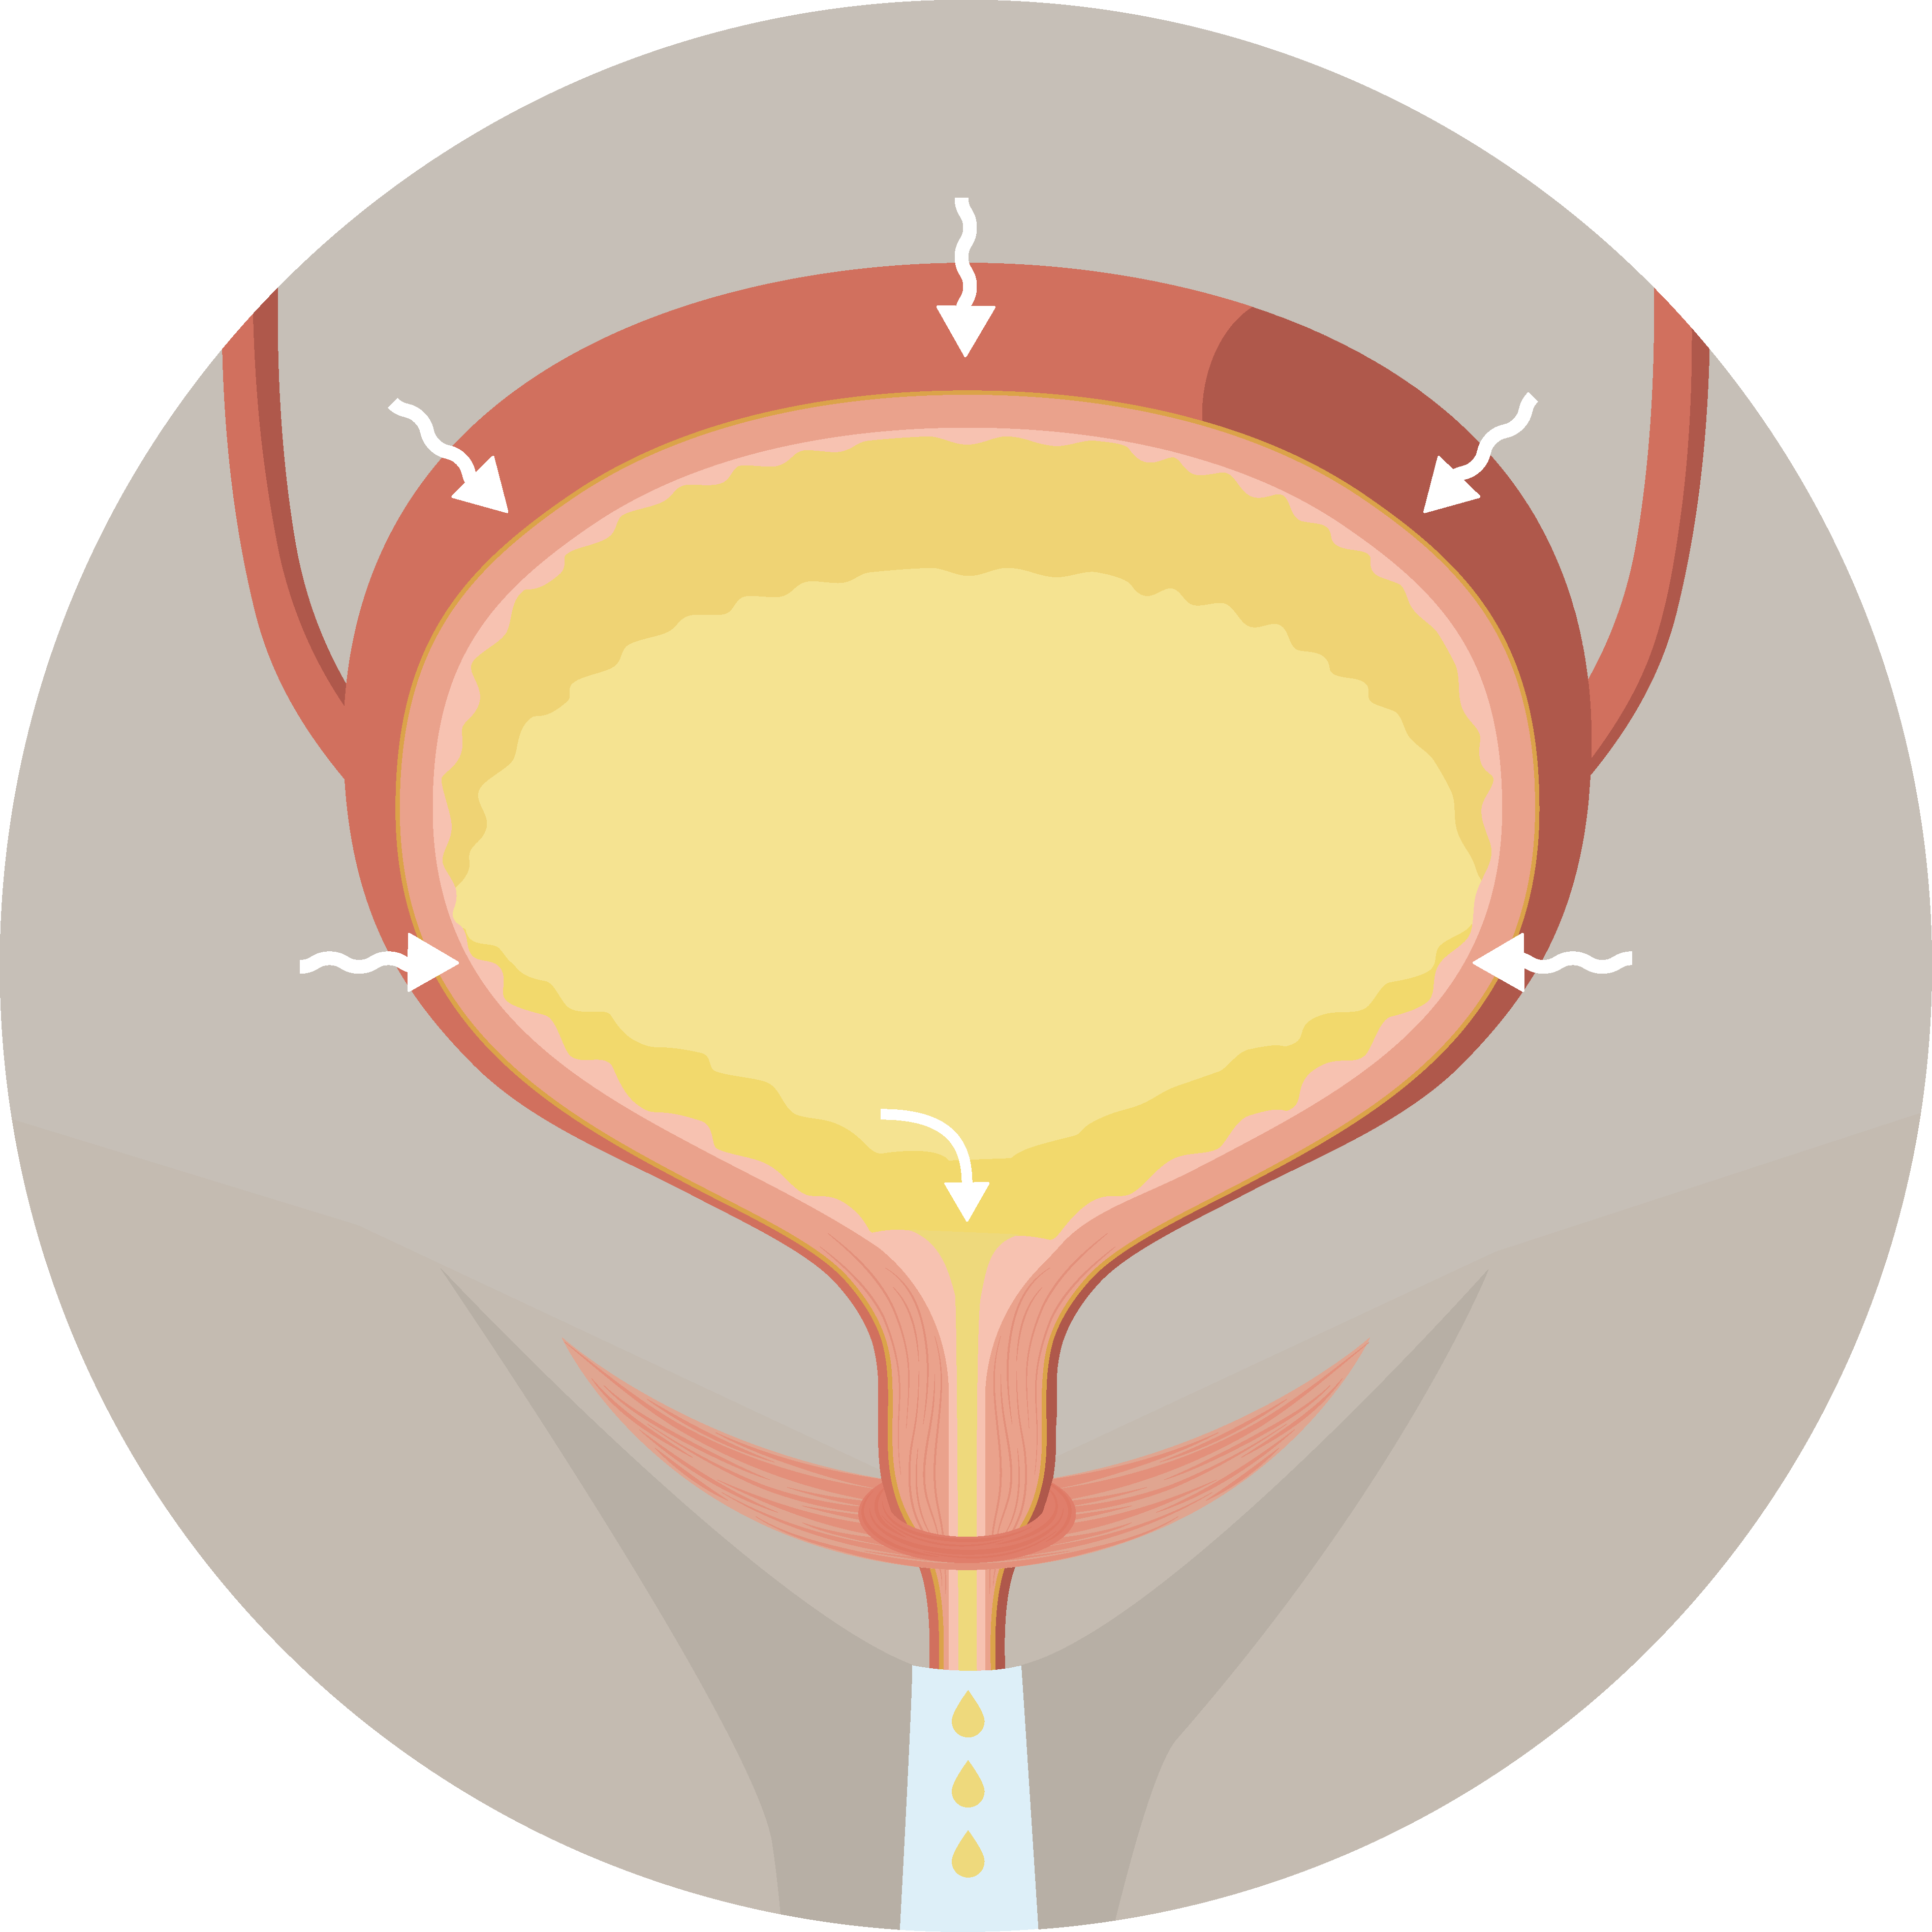 Illustrasjonsbilde av full overaktiv blære som drypper urin